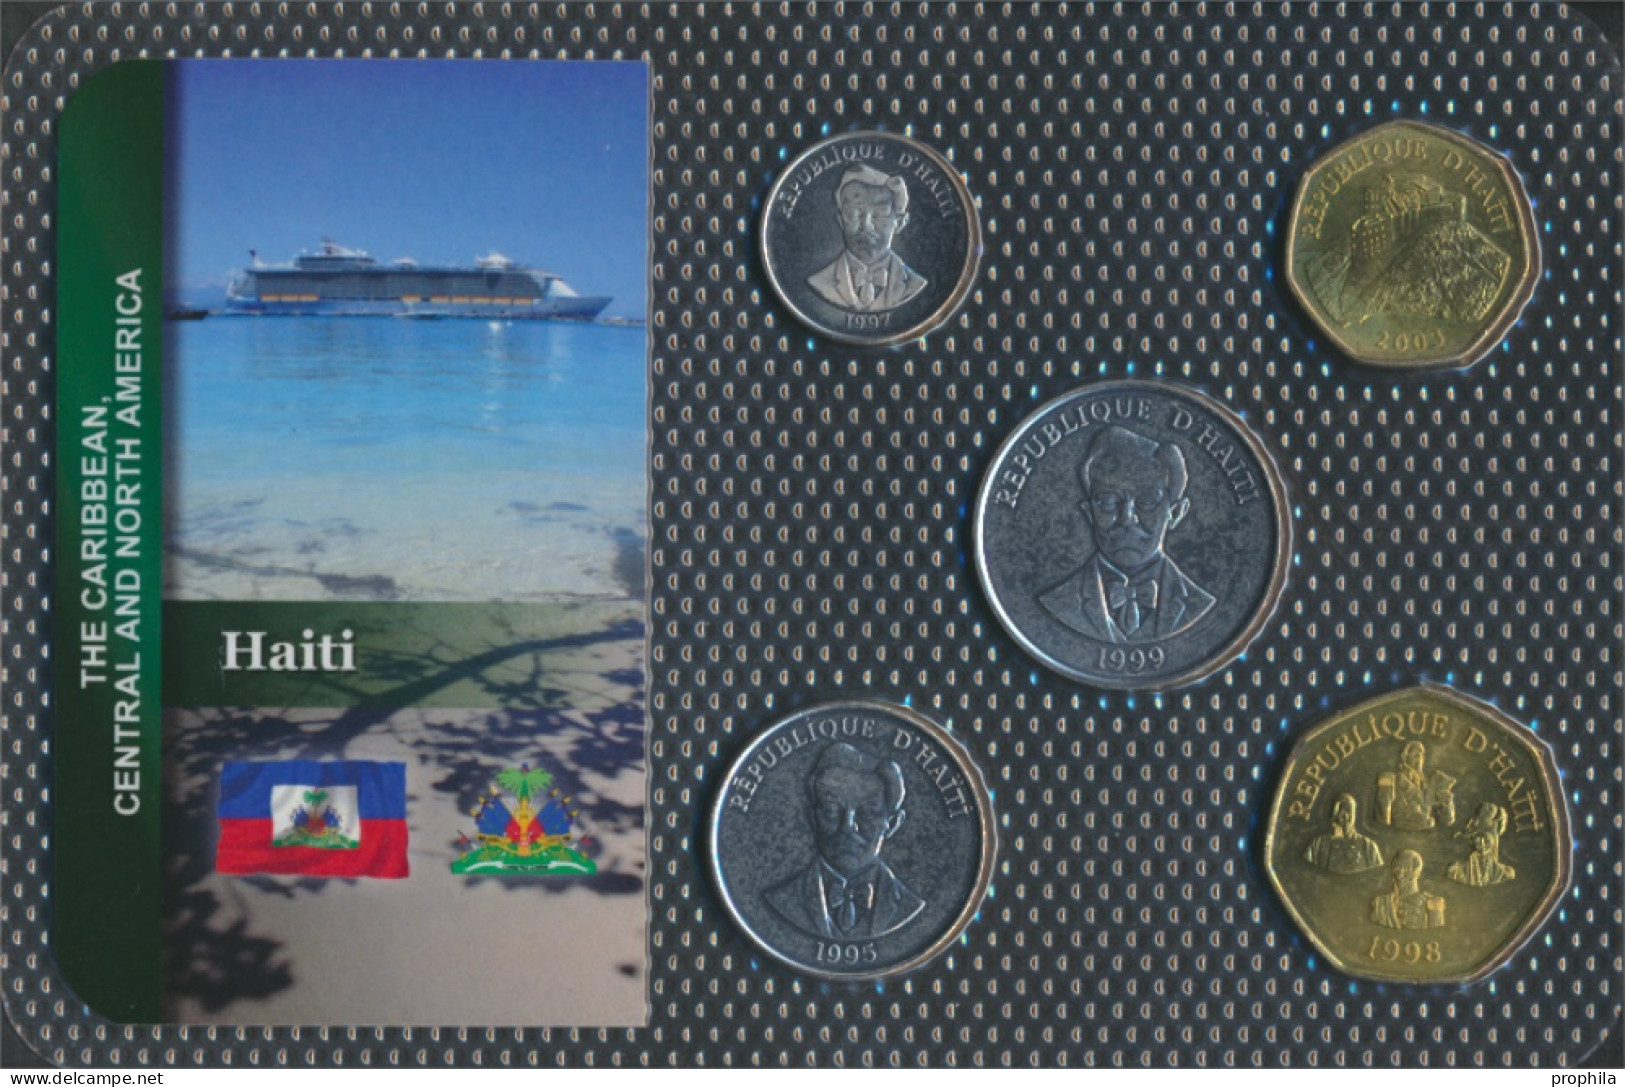 Haiti Stgl./unzirkuliert Kursmünzen Stgl./unzirkuliert Ab 1986 5 Cents Bis 5 Gourdes (10091611 - Haiti